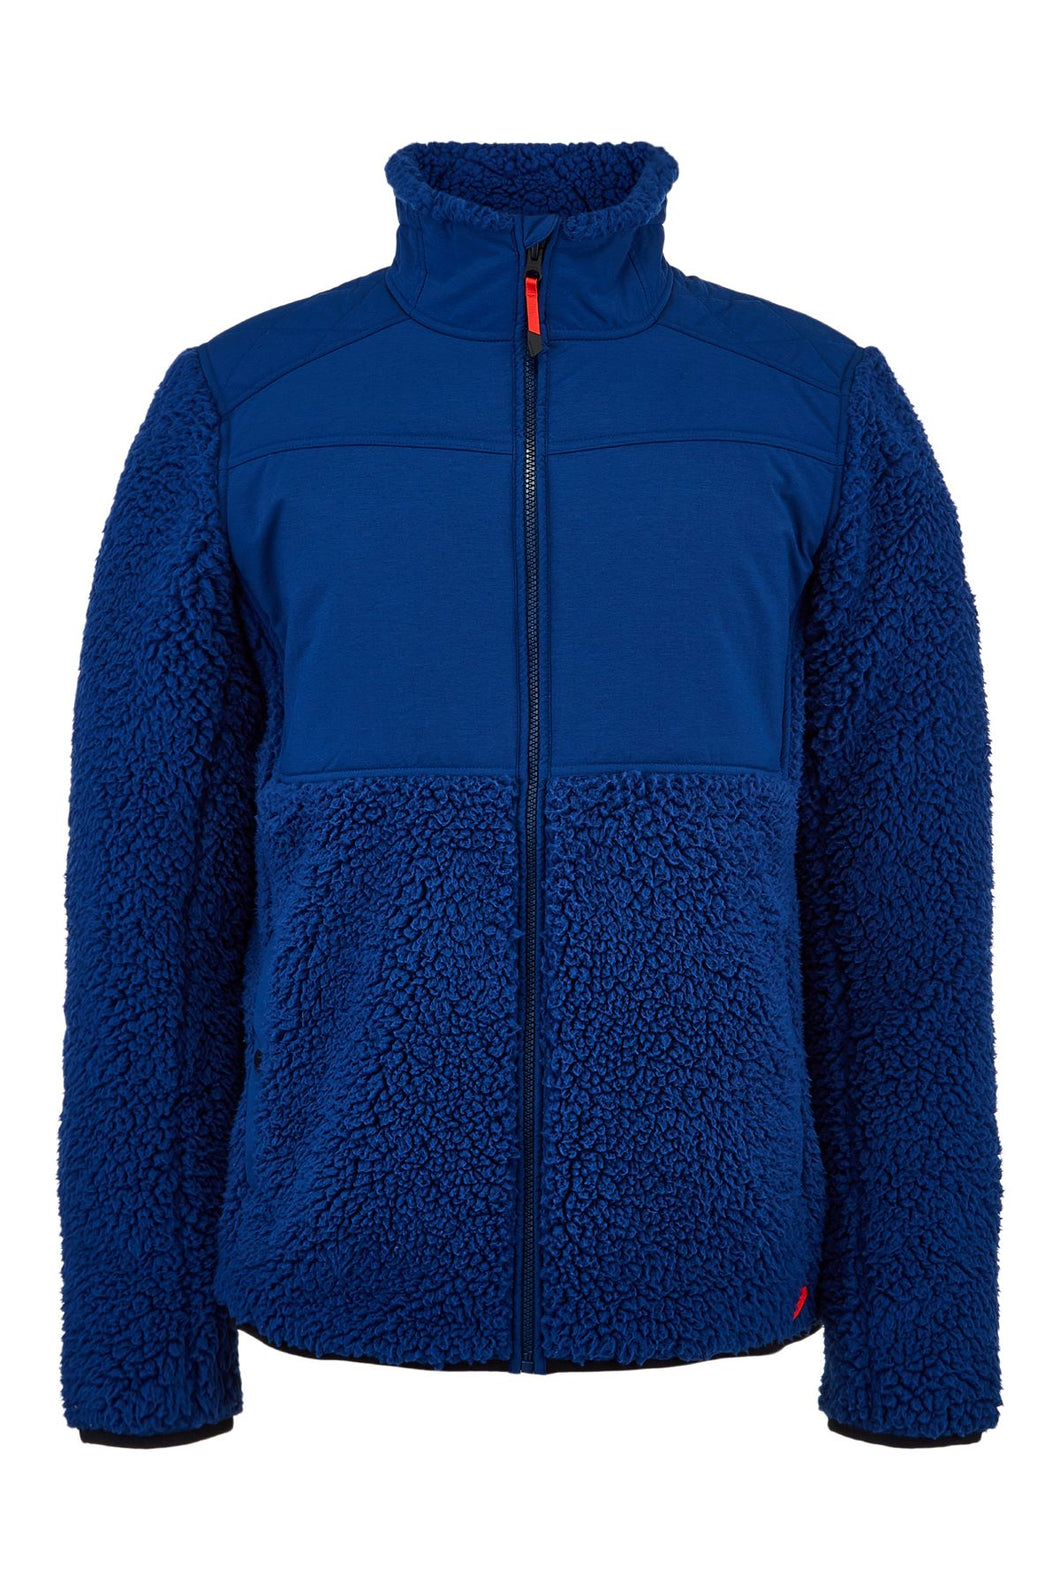 32 Degrees Winter Sale: Men's Fleece Sherpa Lined Jacket $13, Baselayers